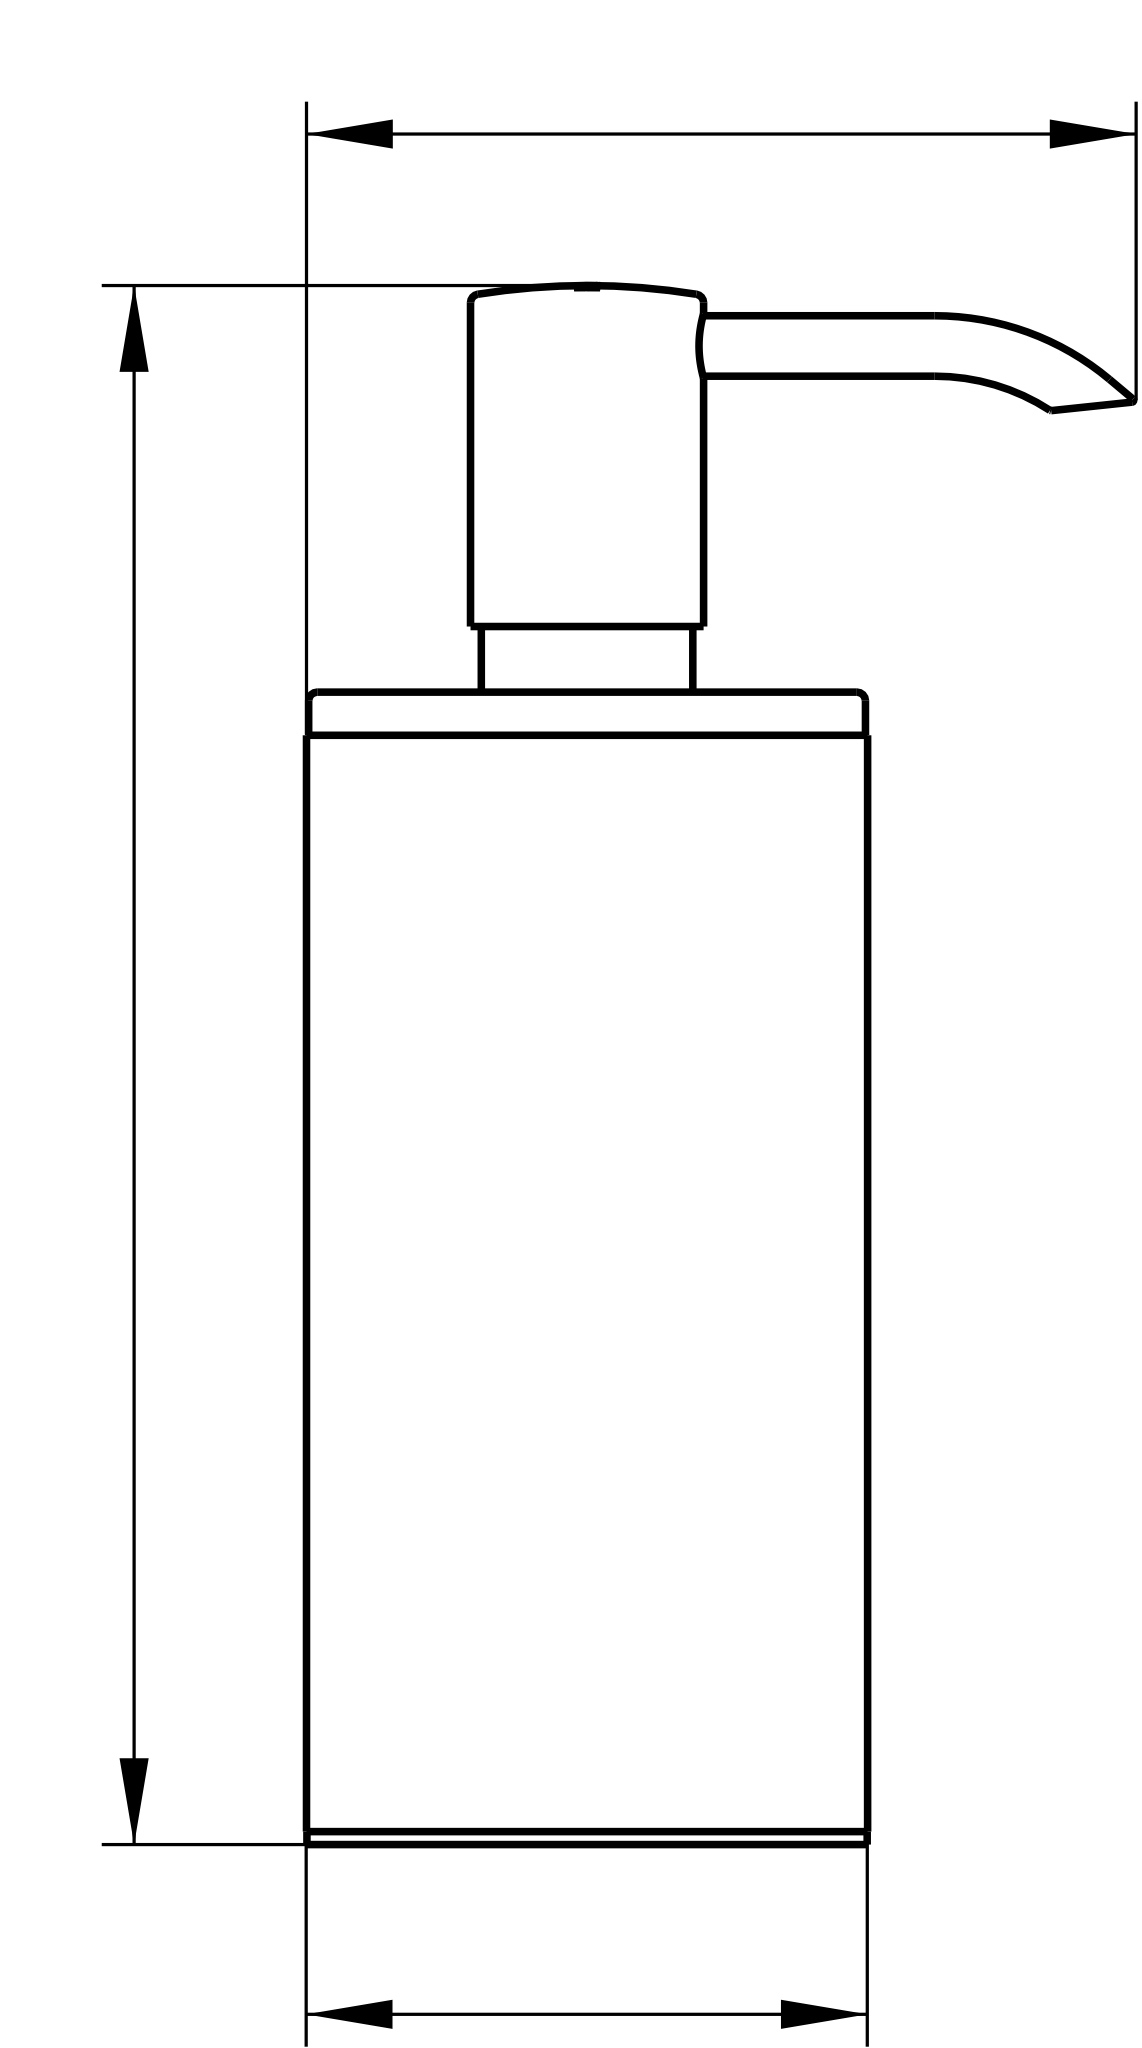 Plan 14952170100 Lotionspender Standmodell m. Pumpe u. Kunststoff-Einsatz silber-eloxiert